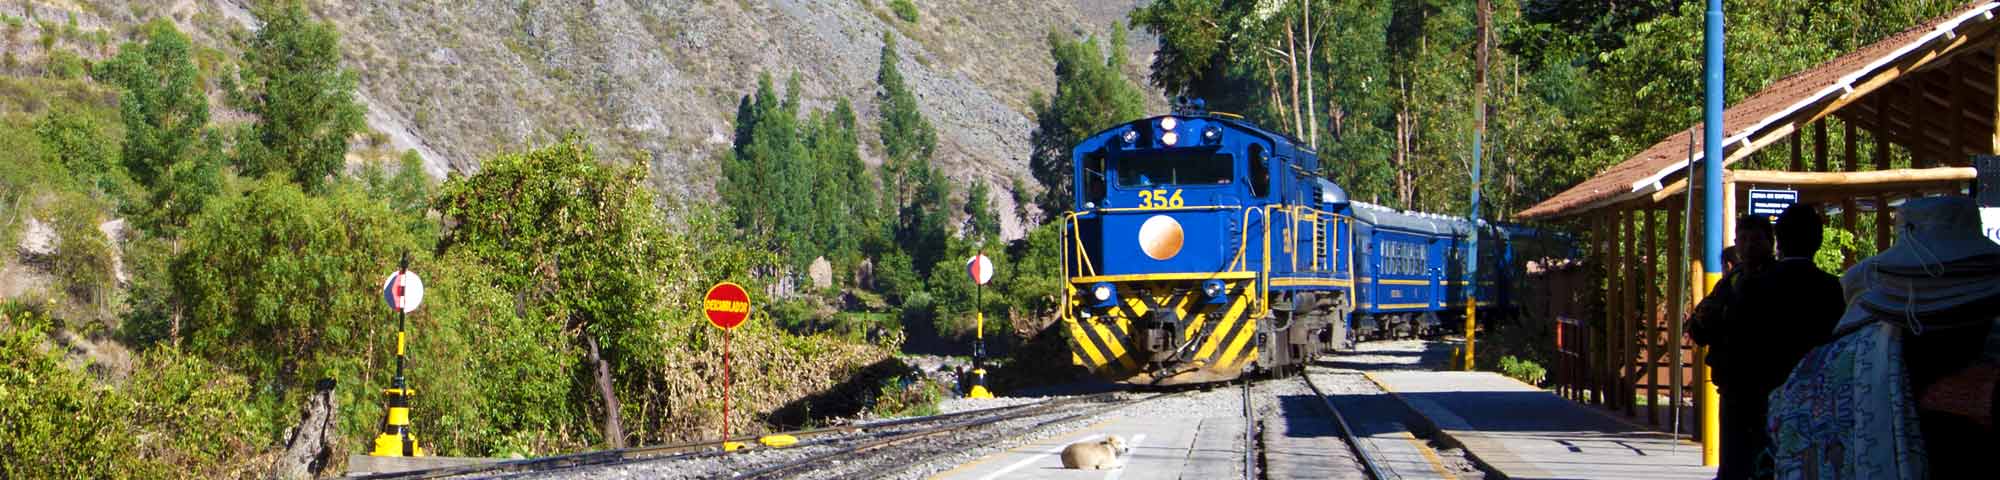 Perurail reanudará operación de tren a Machupicchu desde el 8 de febrero 